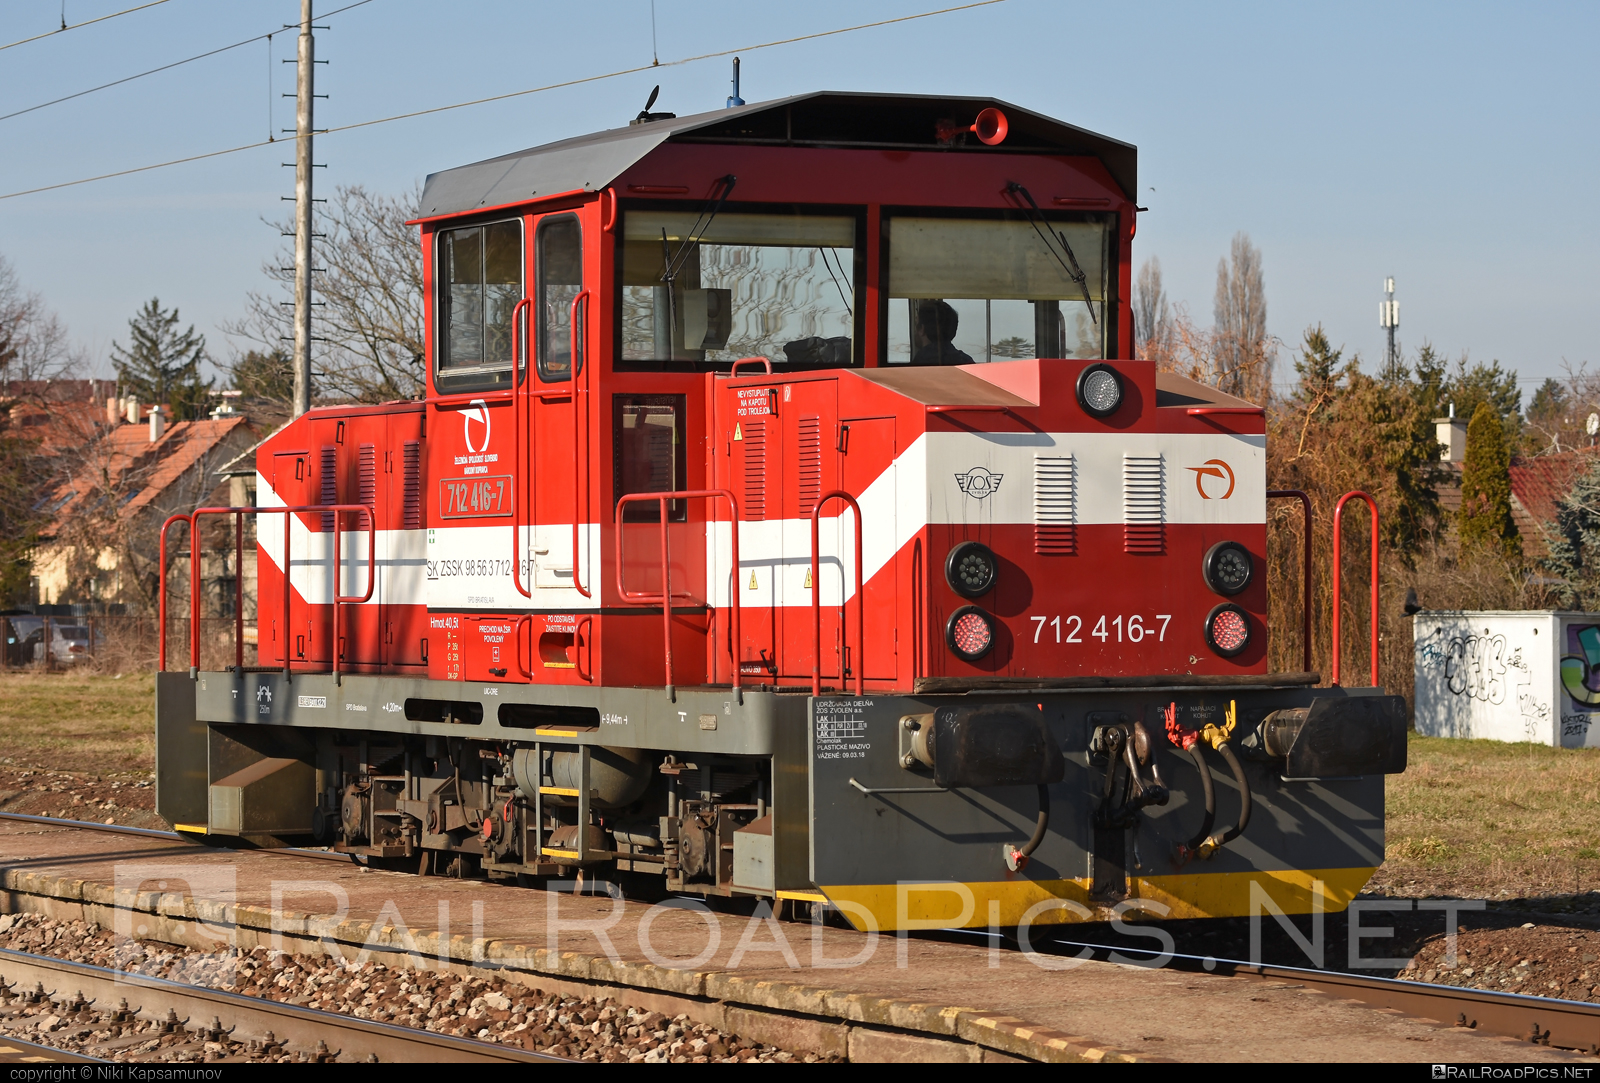 ŽOS Zvolen Class 712 - 712 416-7 operated by Železničná Spoločnost' Slovensko, a.s. #ZeleznicnaSpolocnostSlovensko #locomotive712 #zoszvolen #zoszvolen712 #zssk